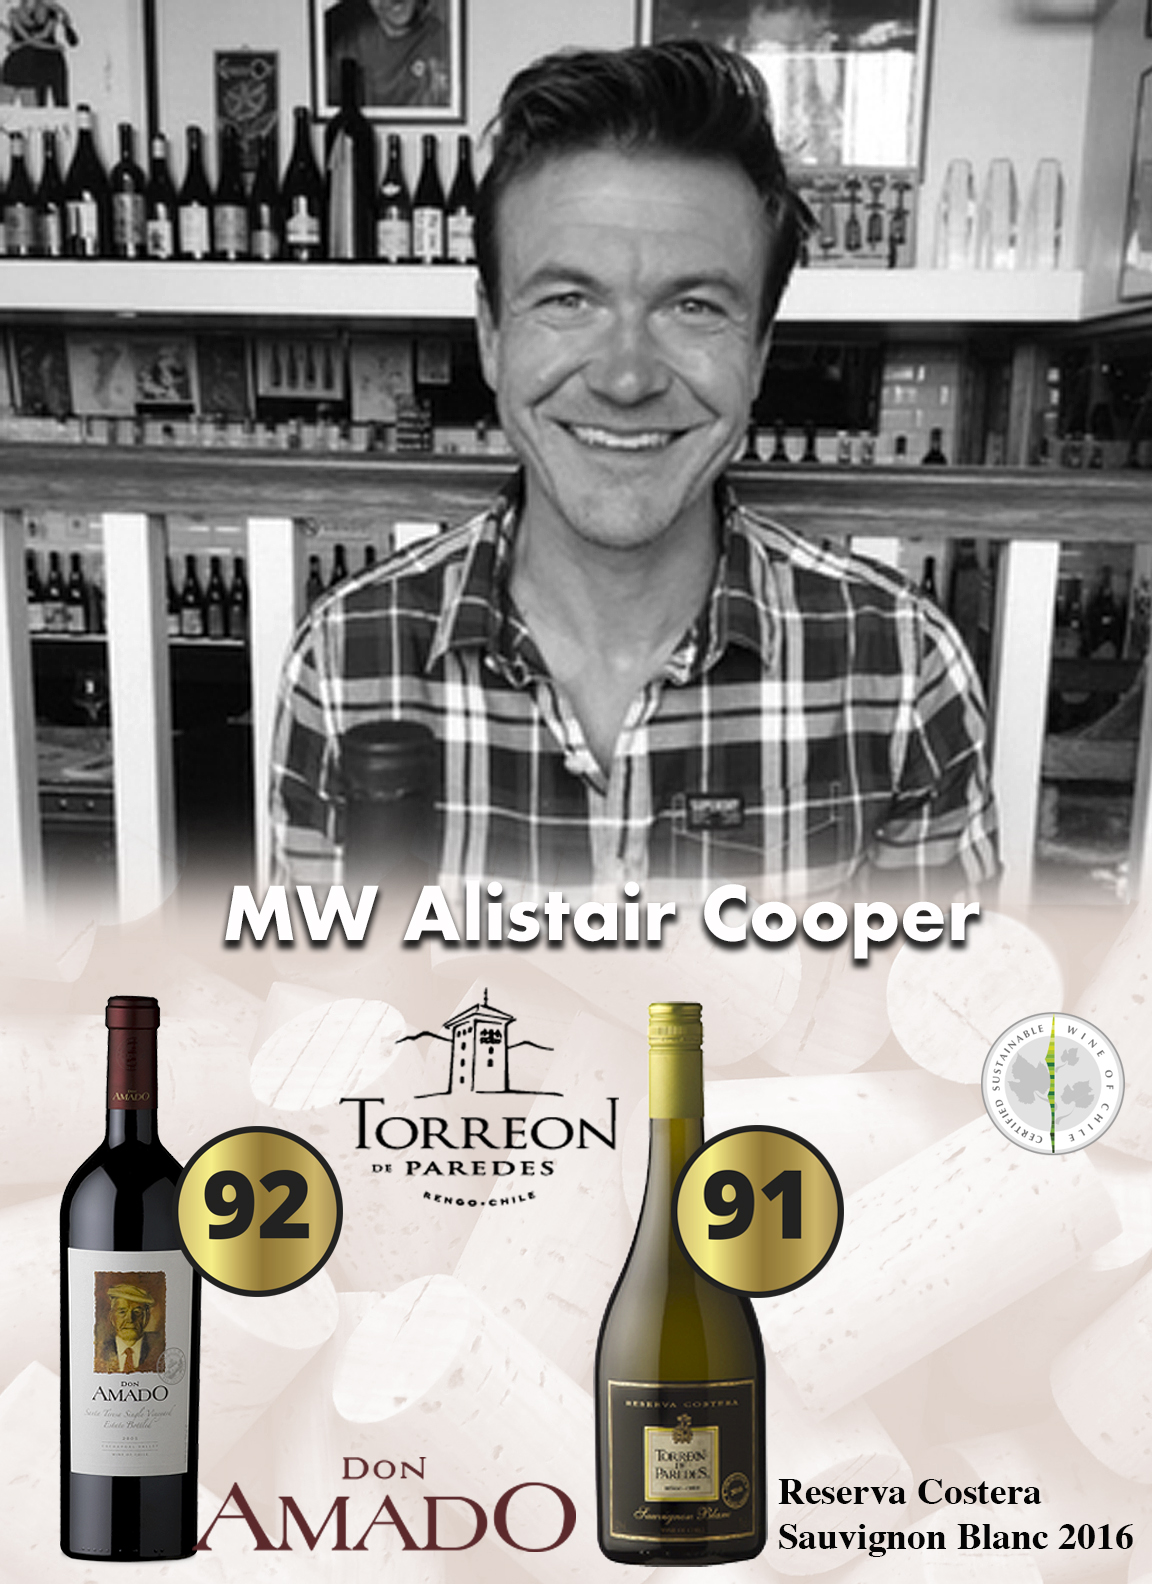 MW Alistair Cooper nos da buenos puntajes en nuestros vinos